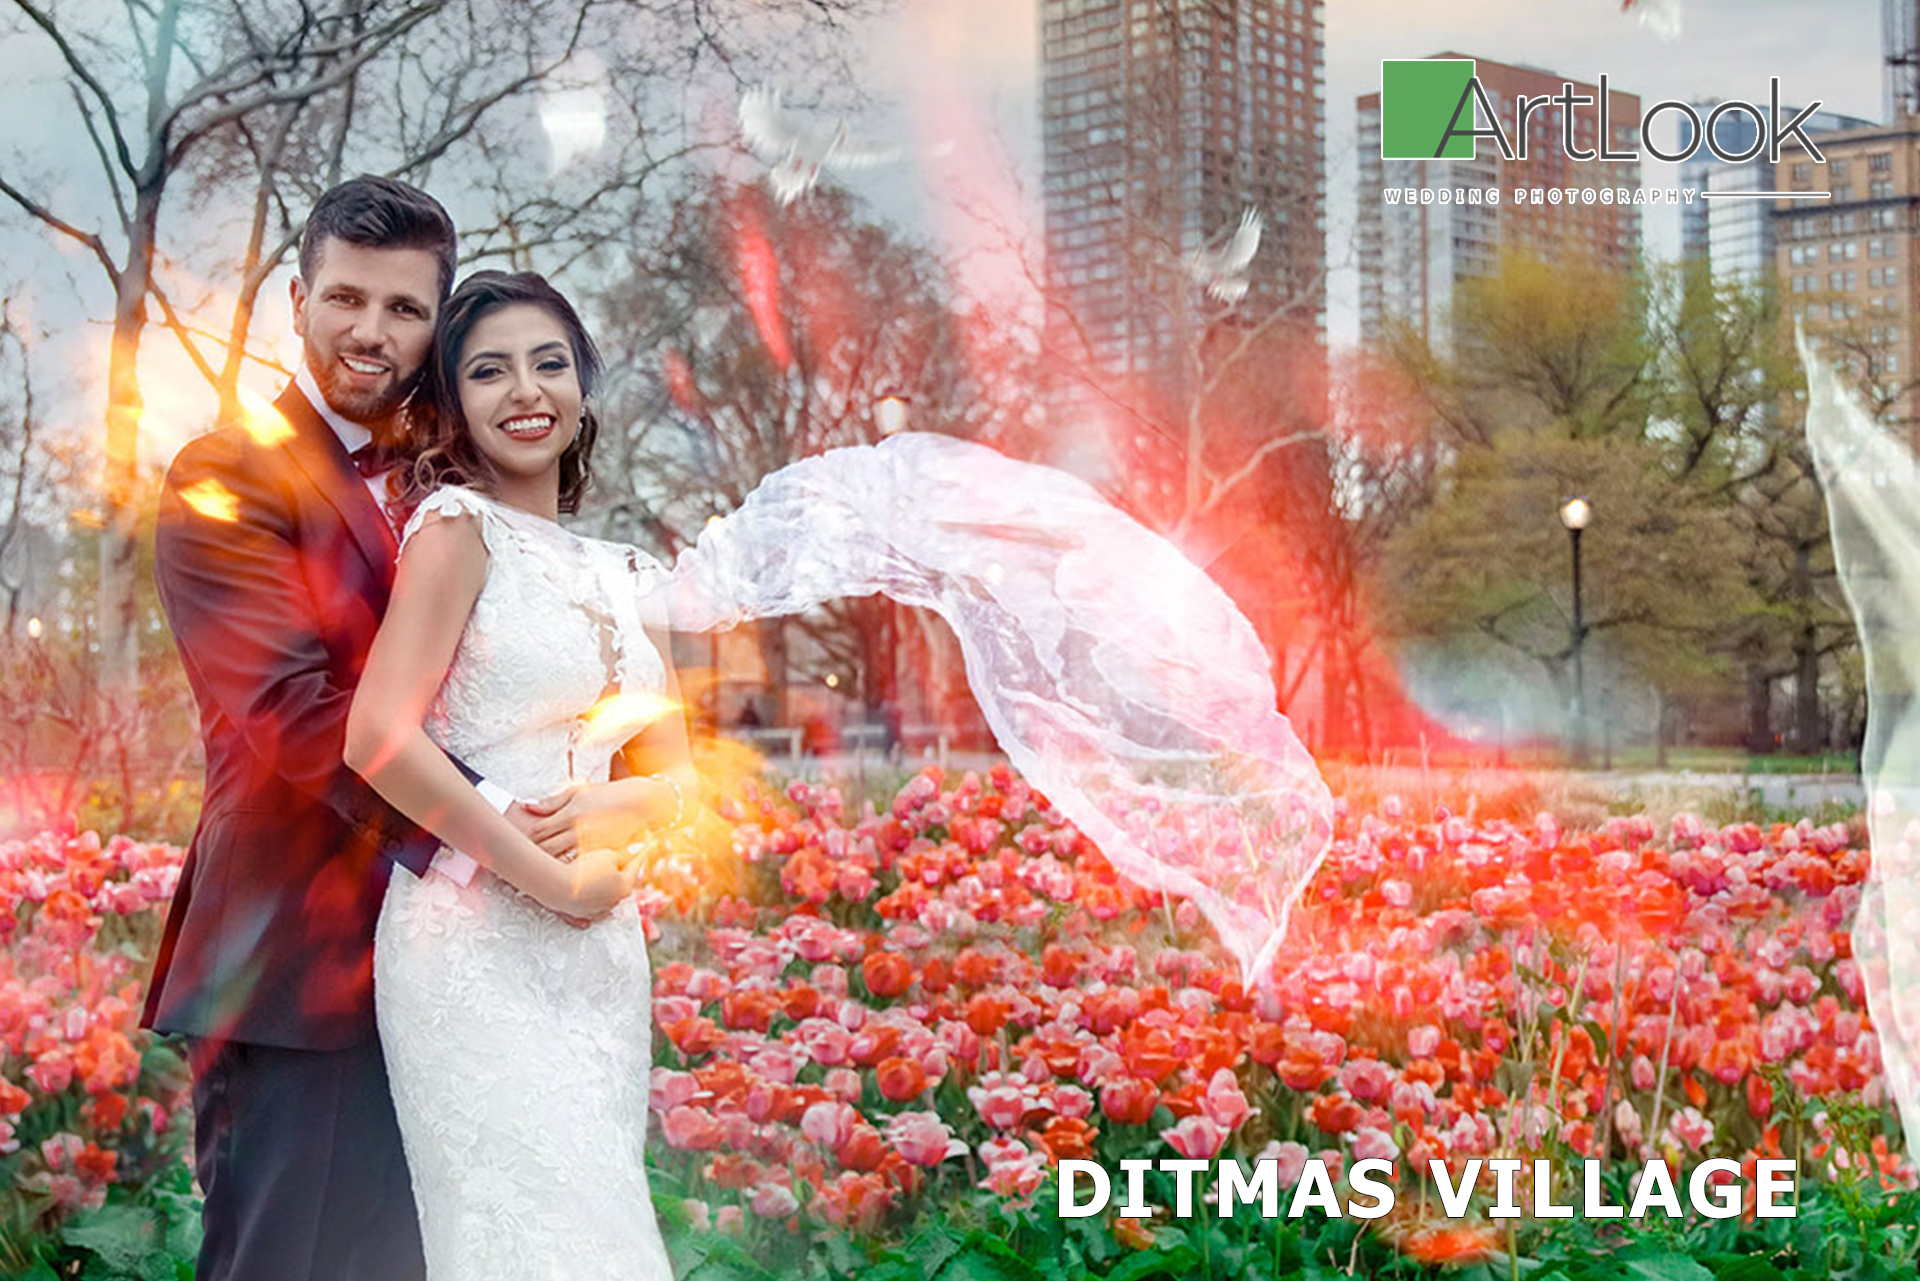 Enchanting Charm: Artlook Weddings in Ditmas Village